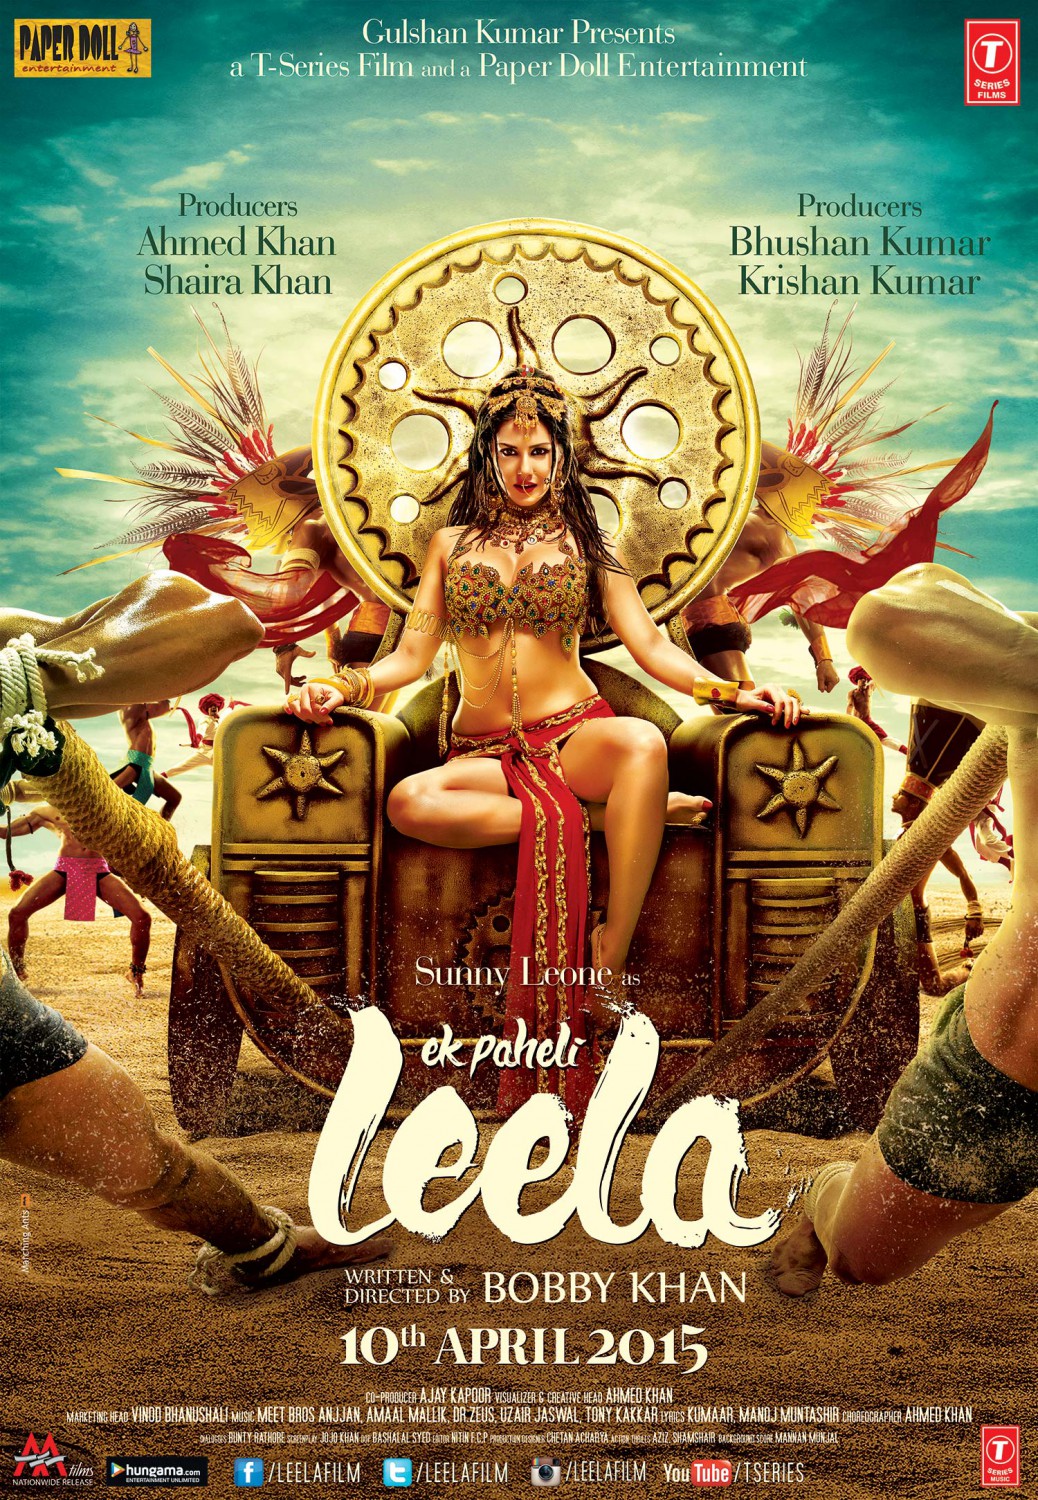 Extra Large Movie Poster Image for Ek Paheli Leela (#1 of 4)